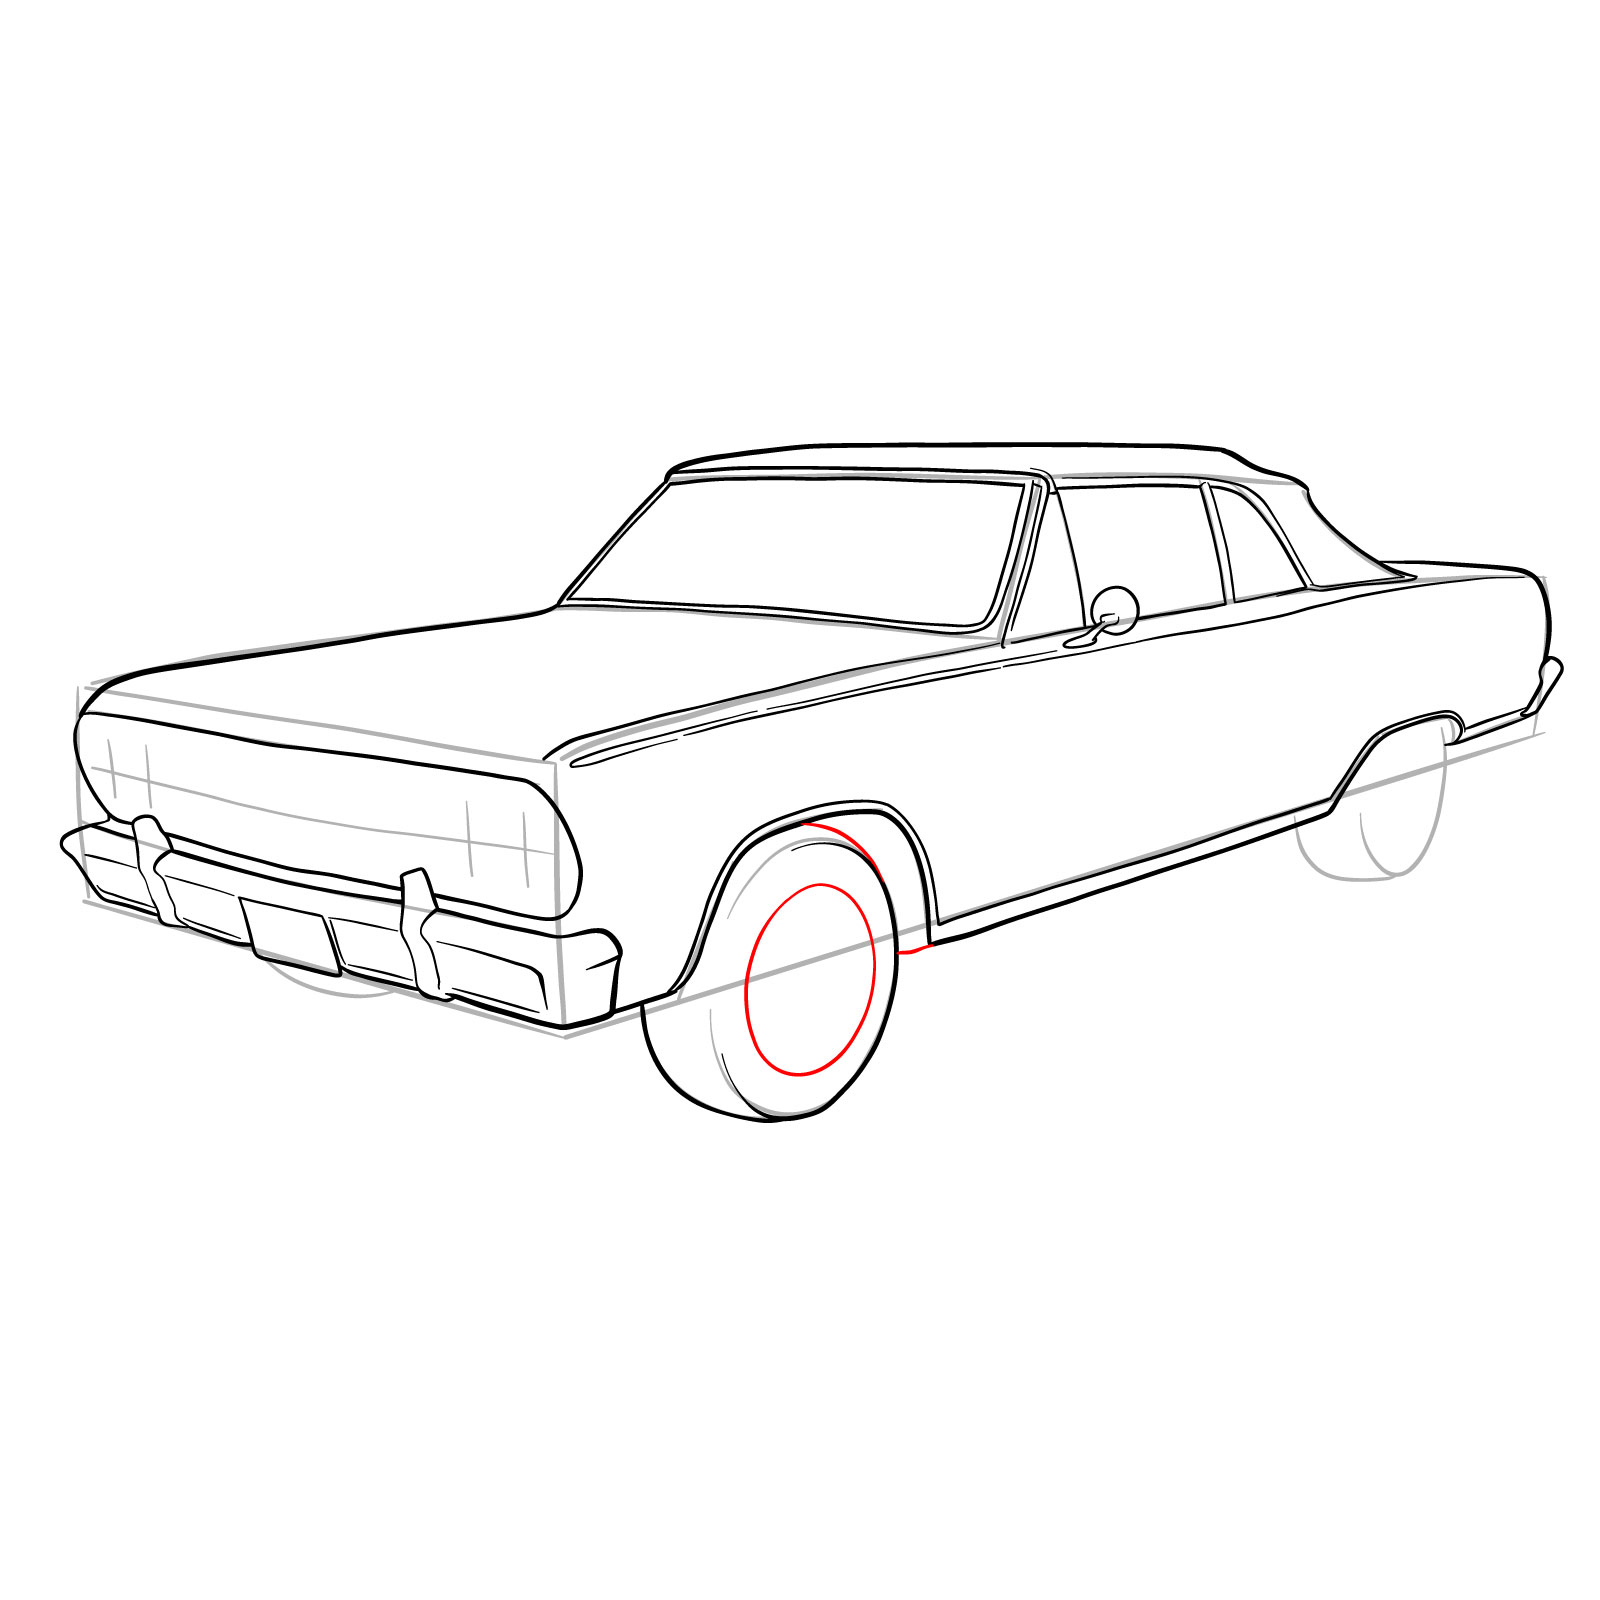 How to draw 1964 Chevrolet Malibu - step 25